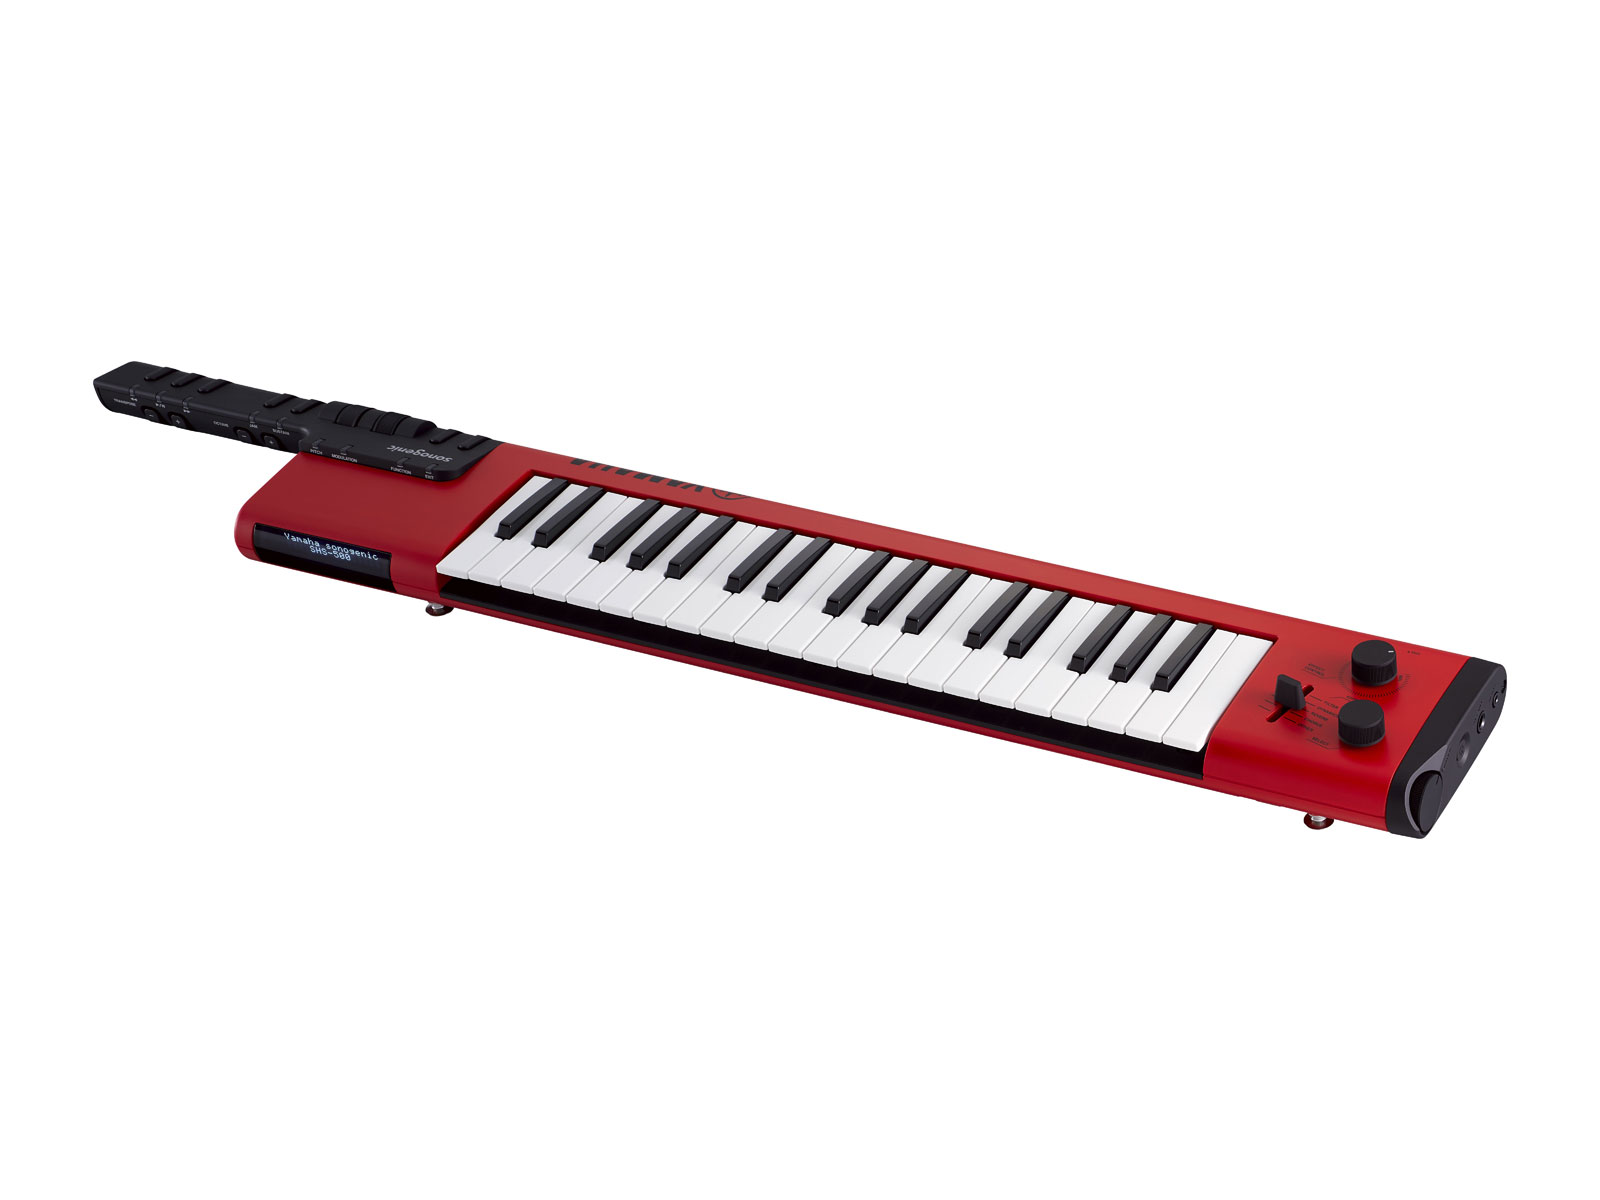 Yamaha Shs 500 Red - Entertainerkeyboard - Variation 1